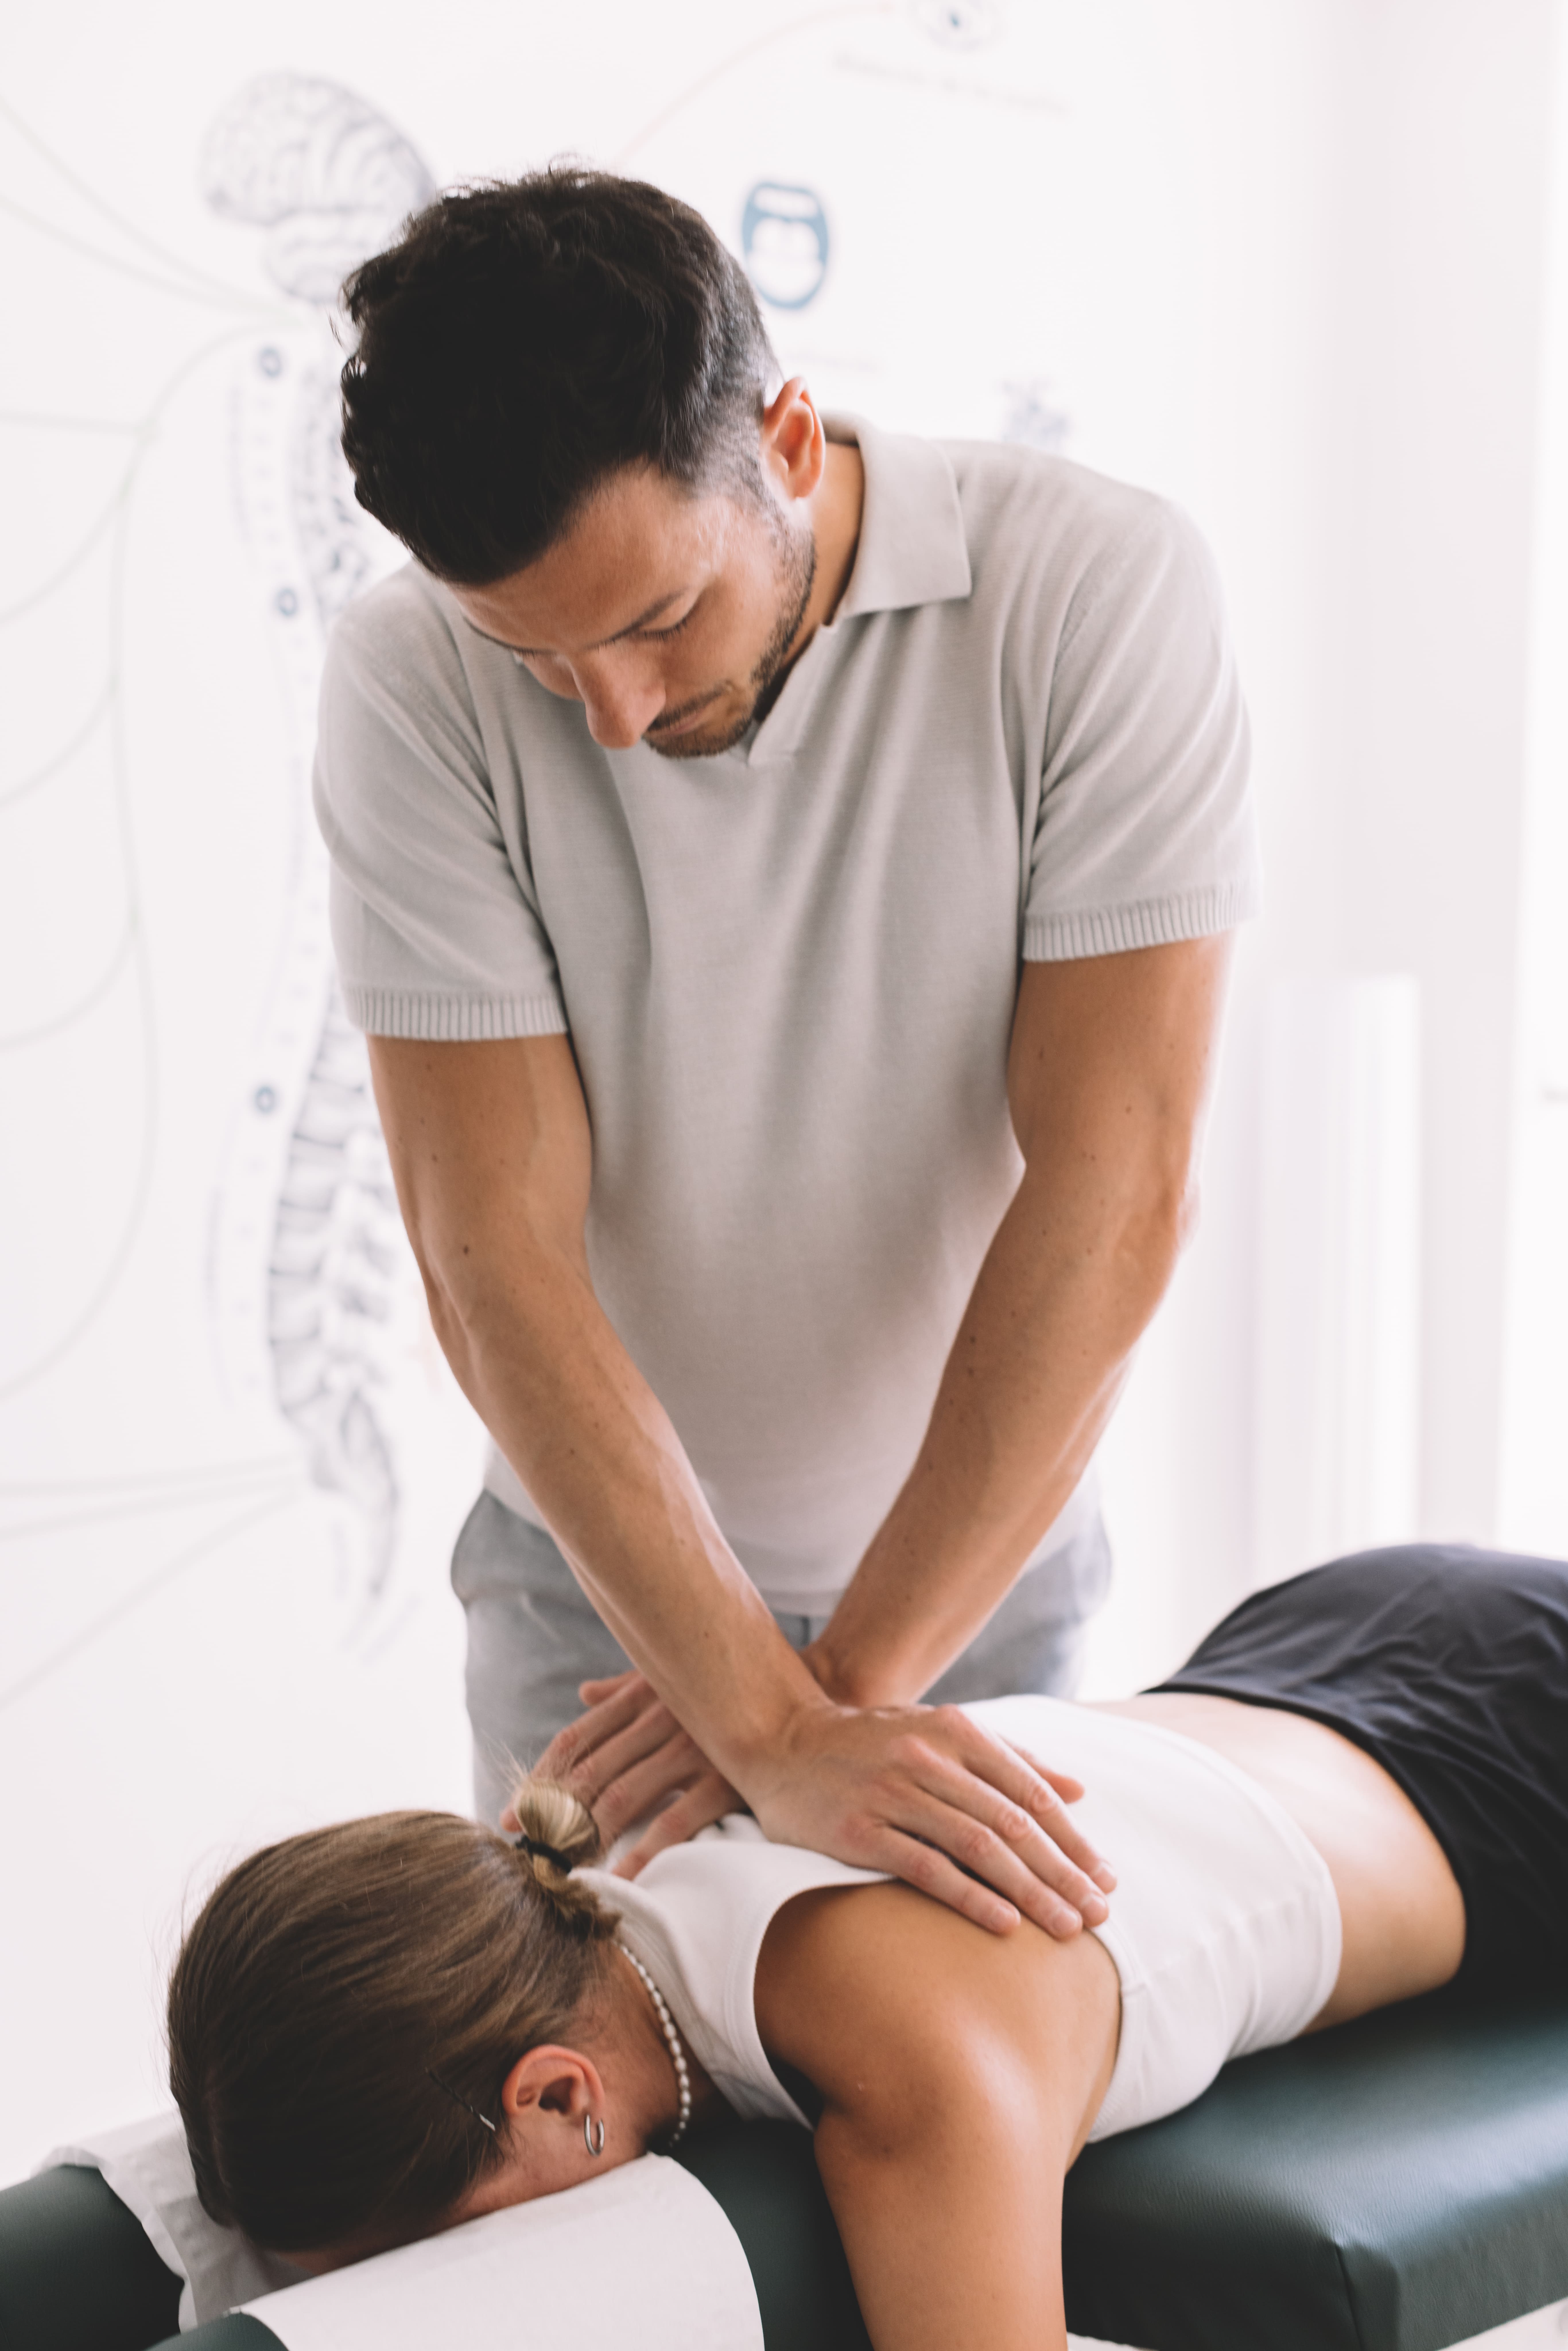 Estres-quimico-y-alimentacion-quiropractica: Mujer estirada boca abajo en una camilla de quiropráctica y hombre quiropráctico poniendo sus manos sobre la espalda de la mujer.